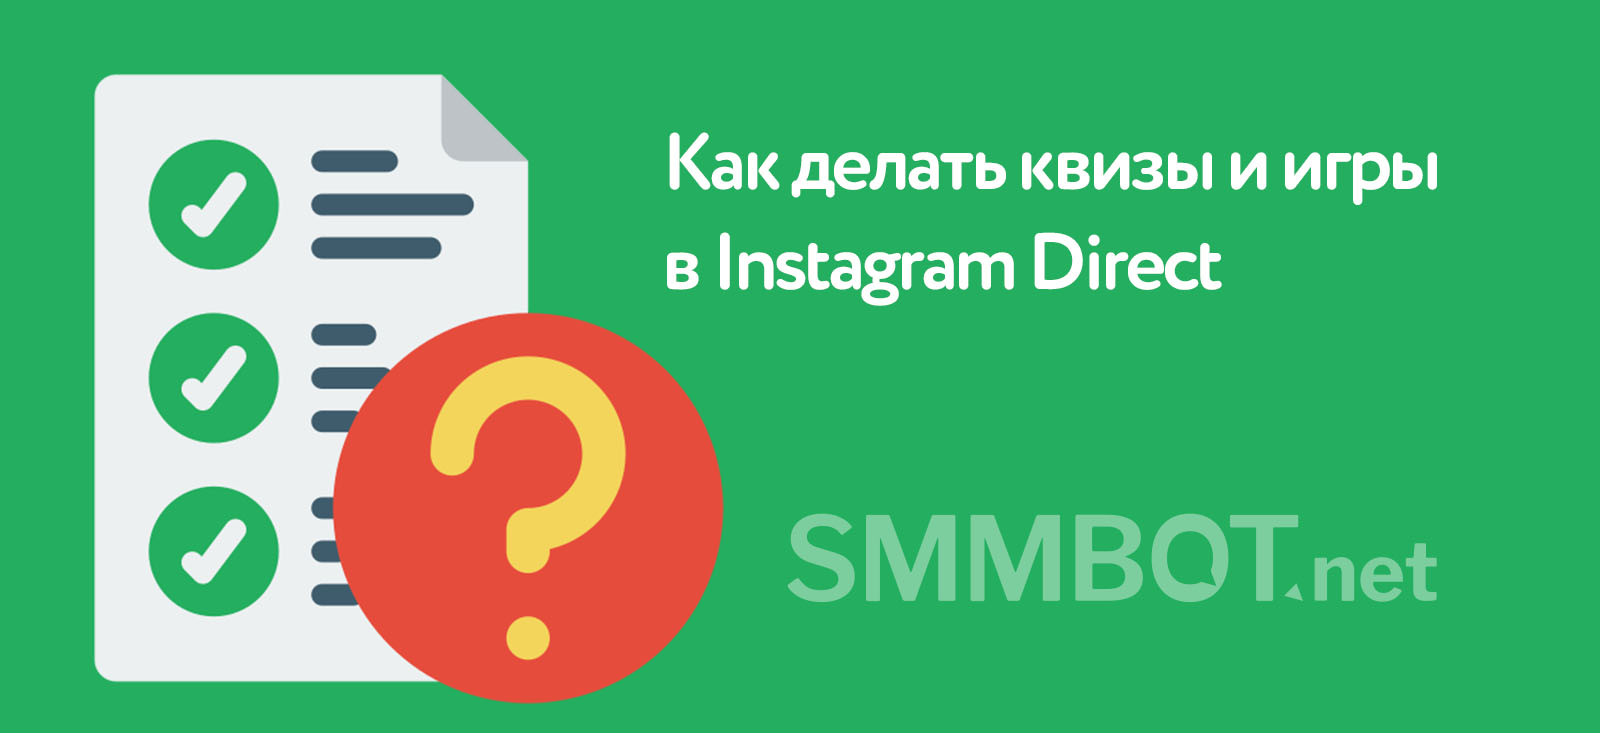 Как делать квизы в Instagram Direct с помощью чат-бота